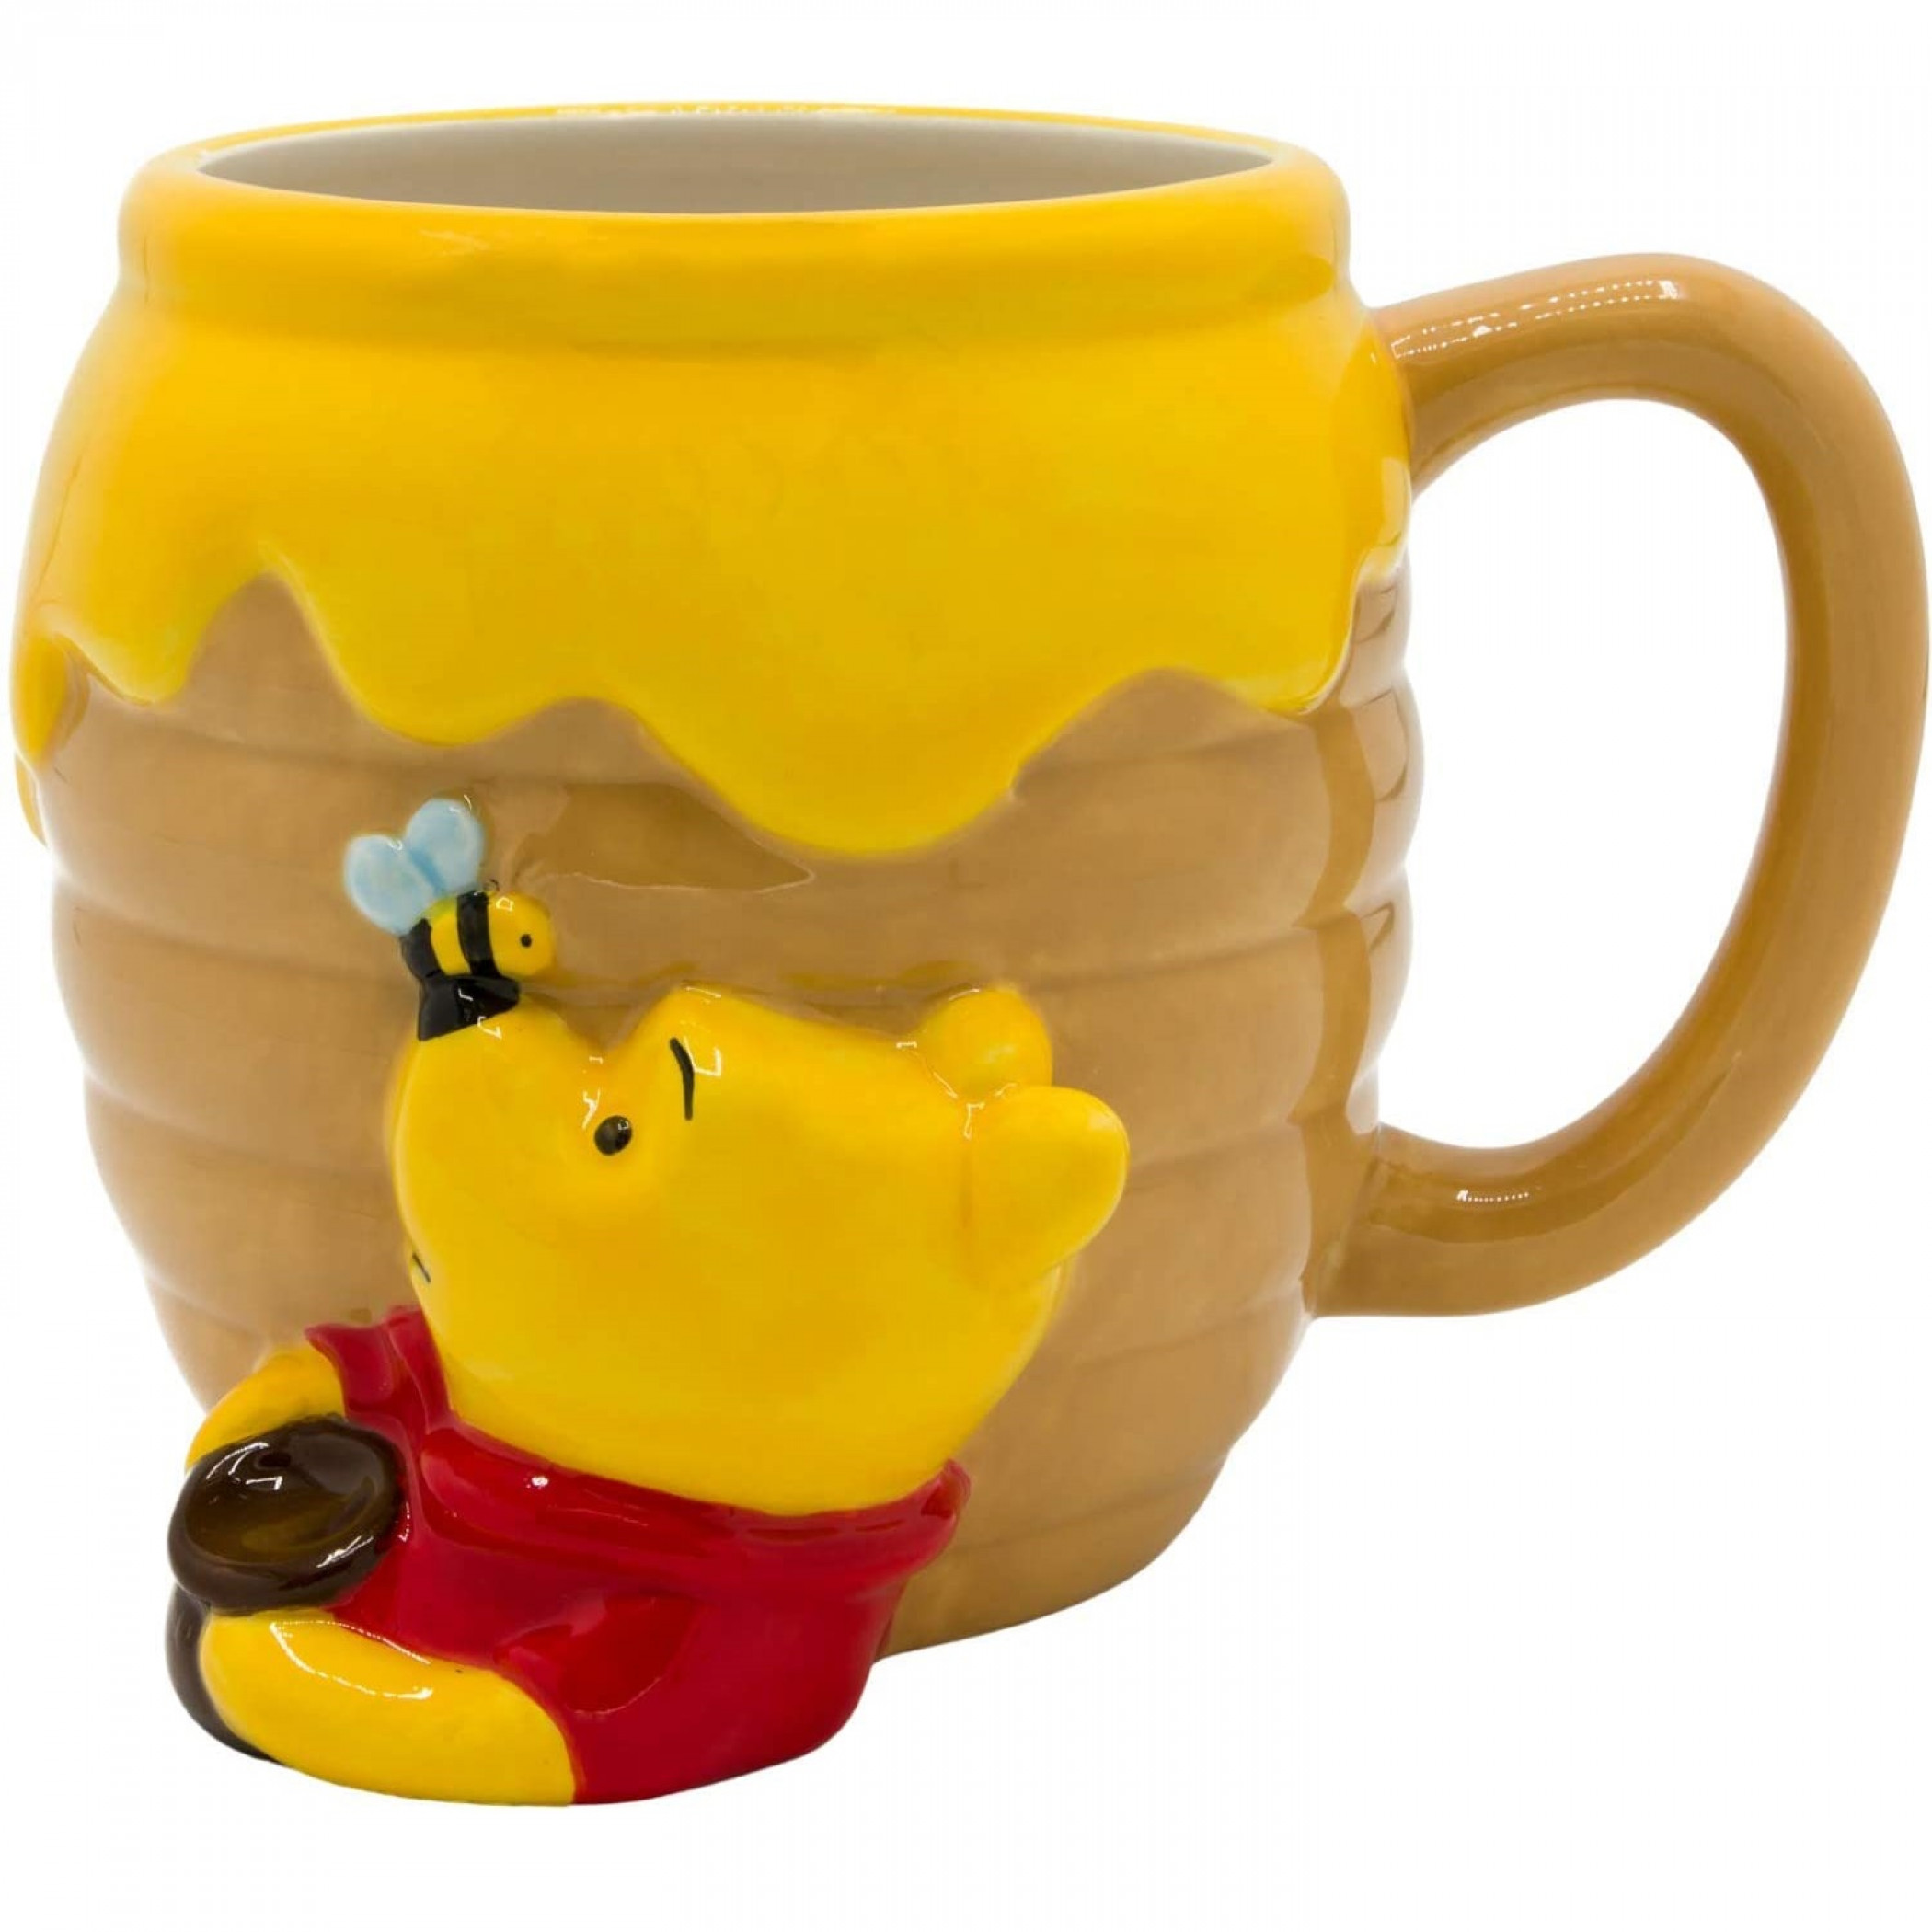 Winnie the Pooh Honey Pot Ceramic Mug